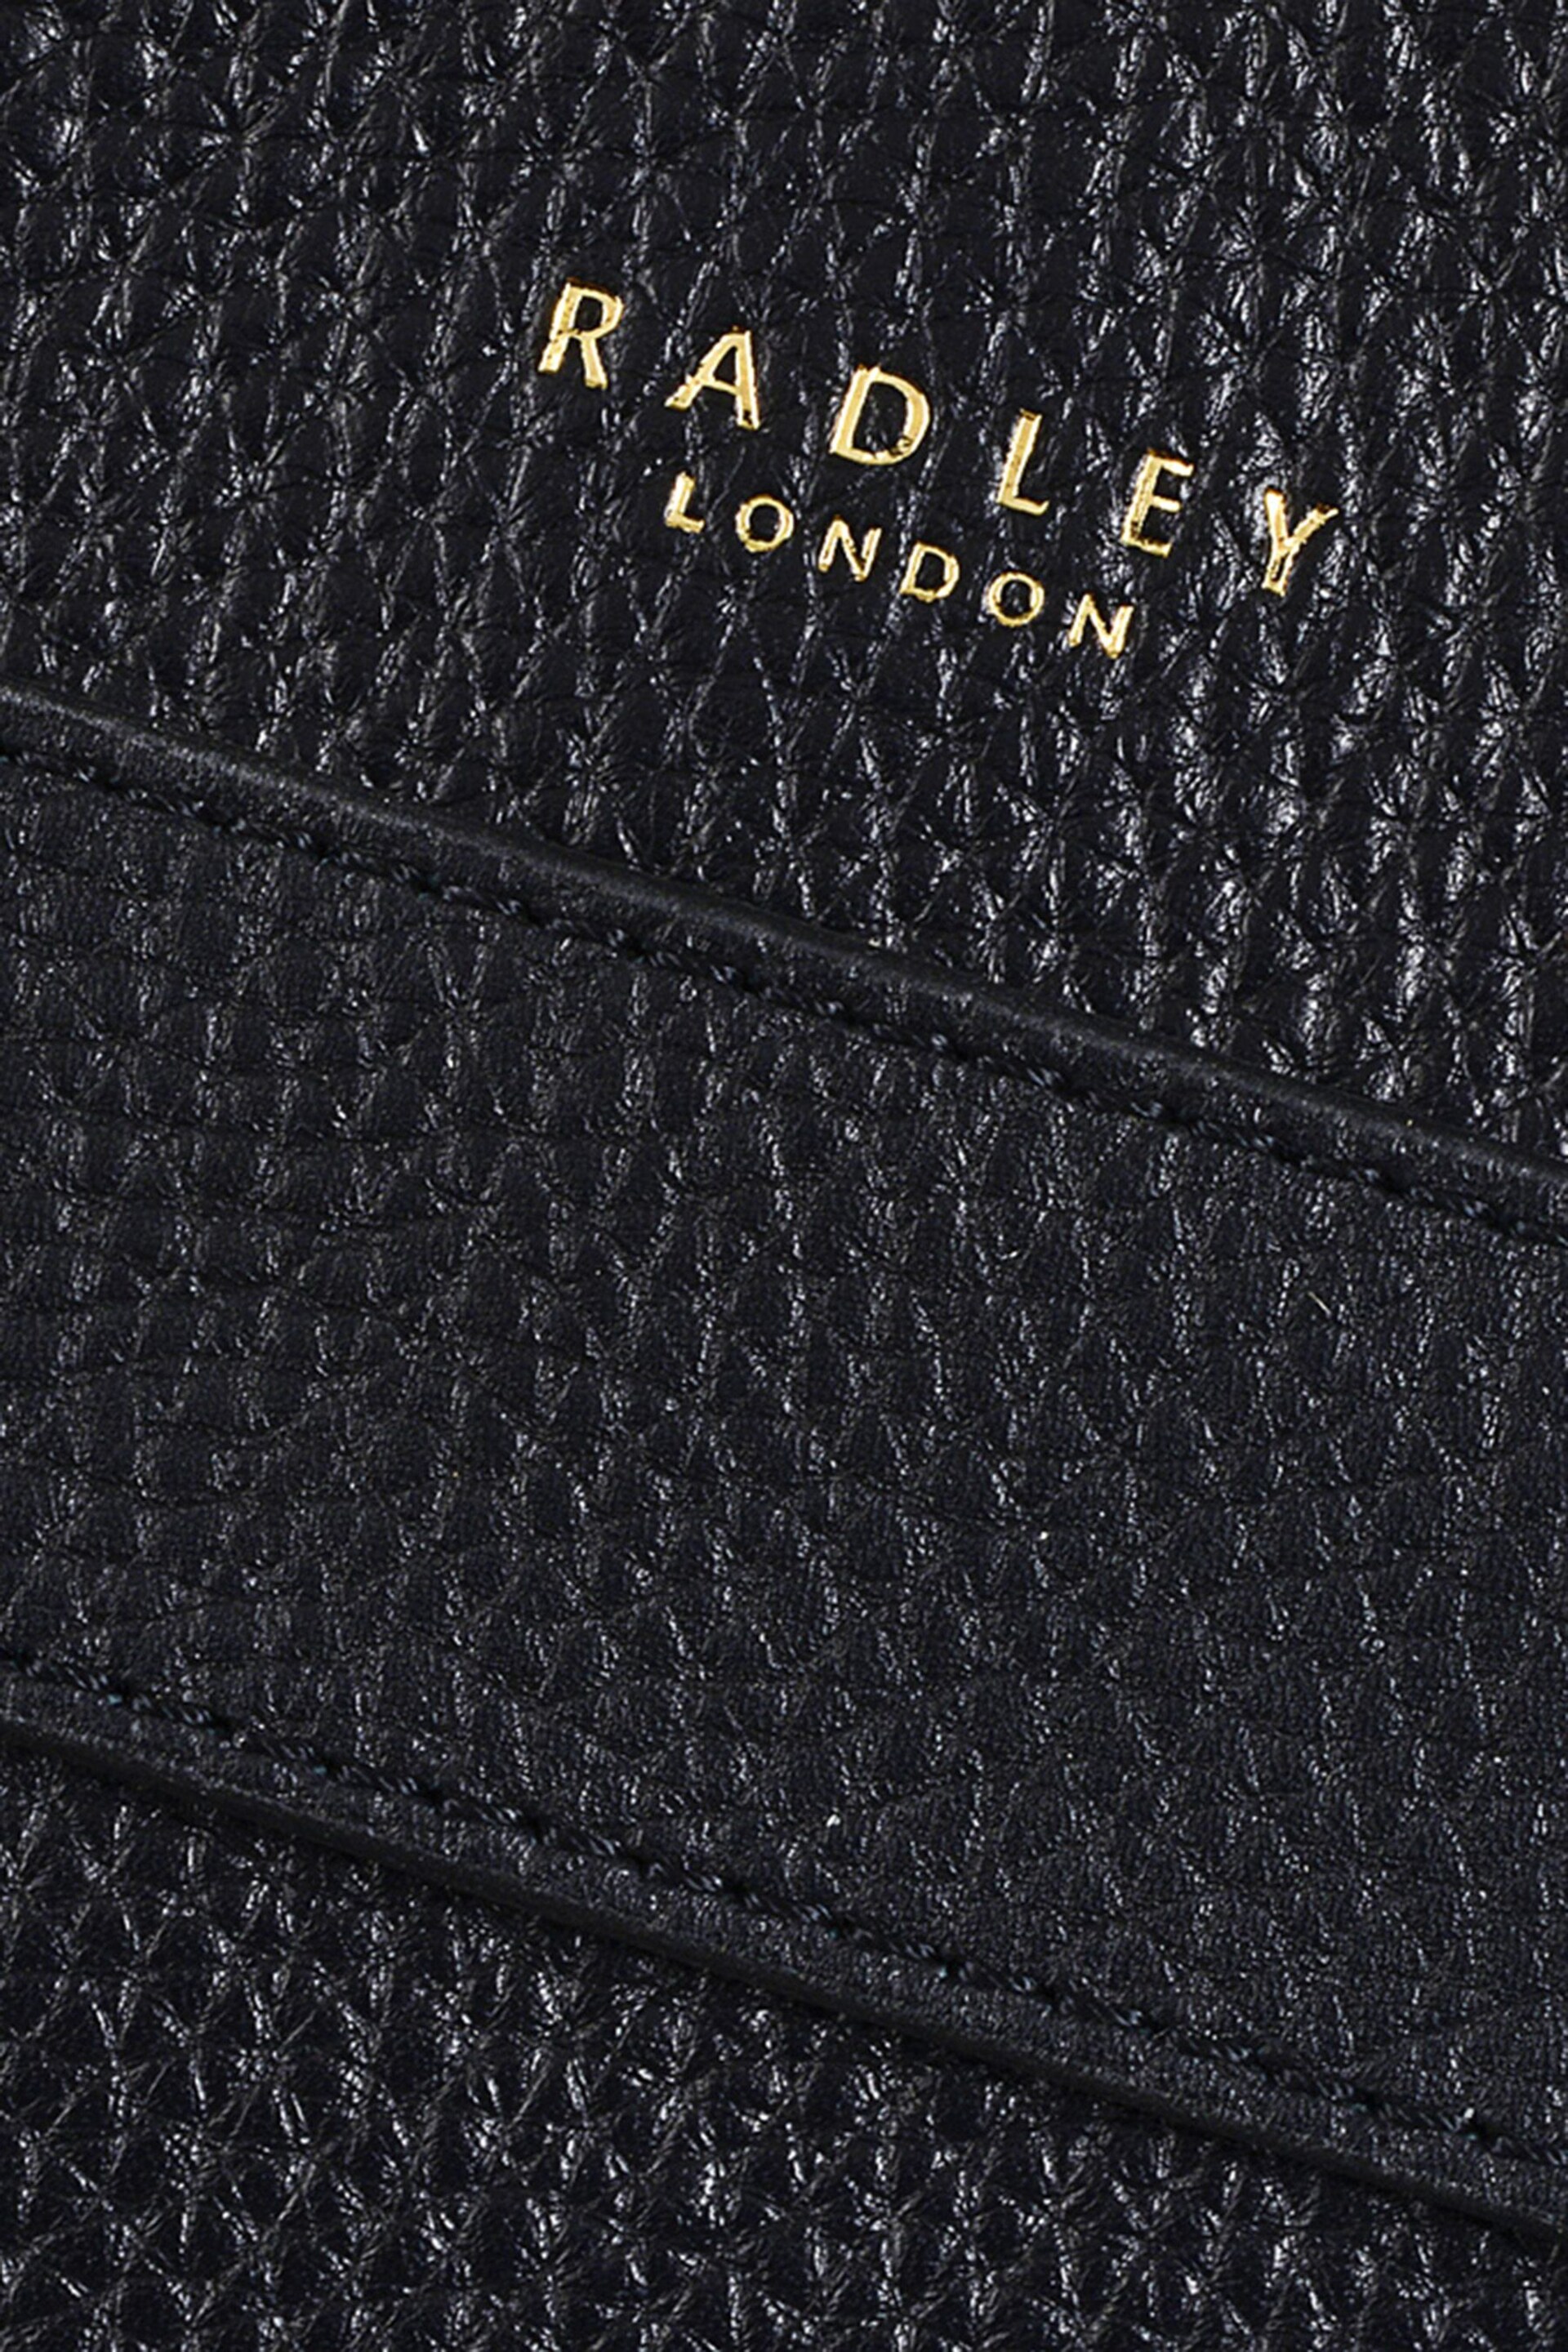 Radley London Dukes Place Large Leather Crossbody Bag - Image 4 of 4